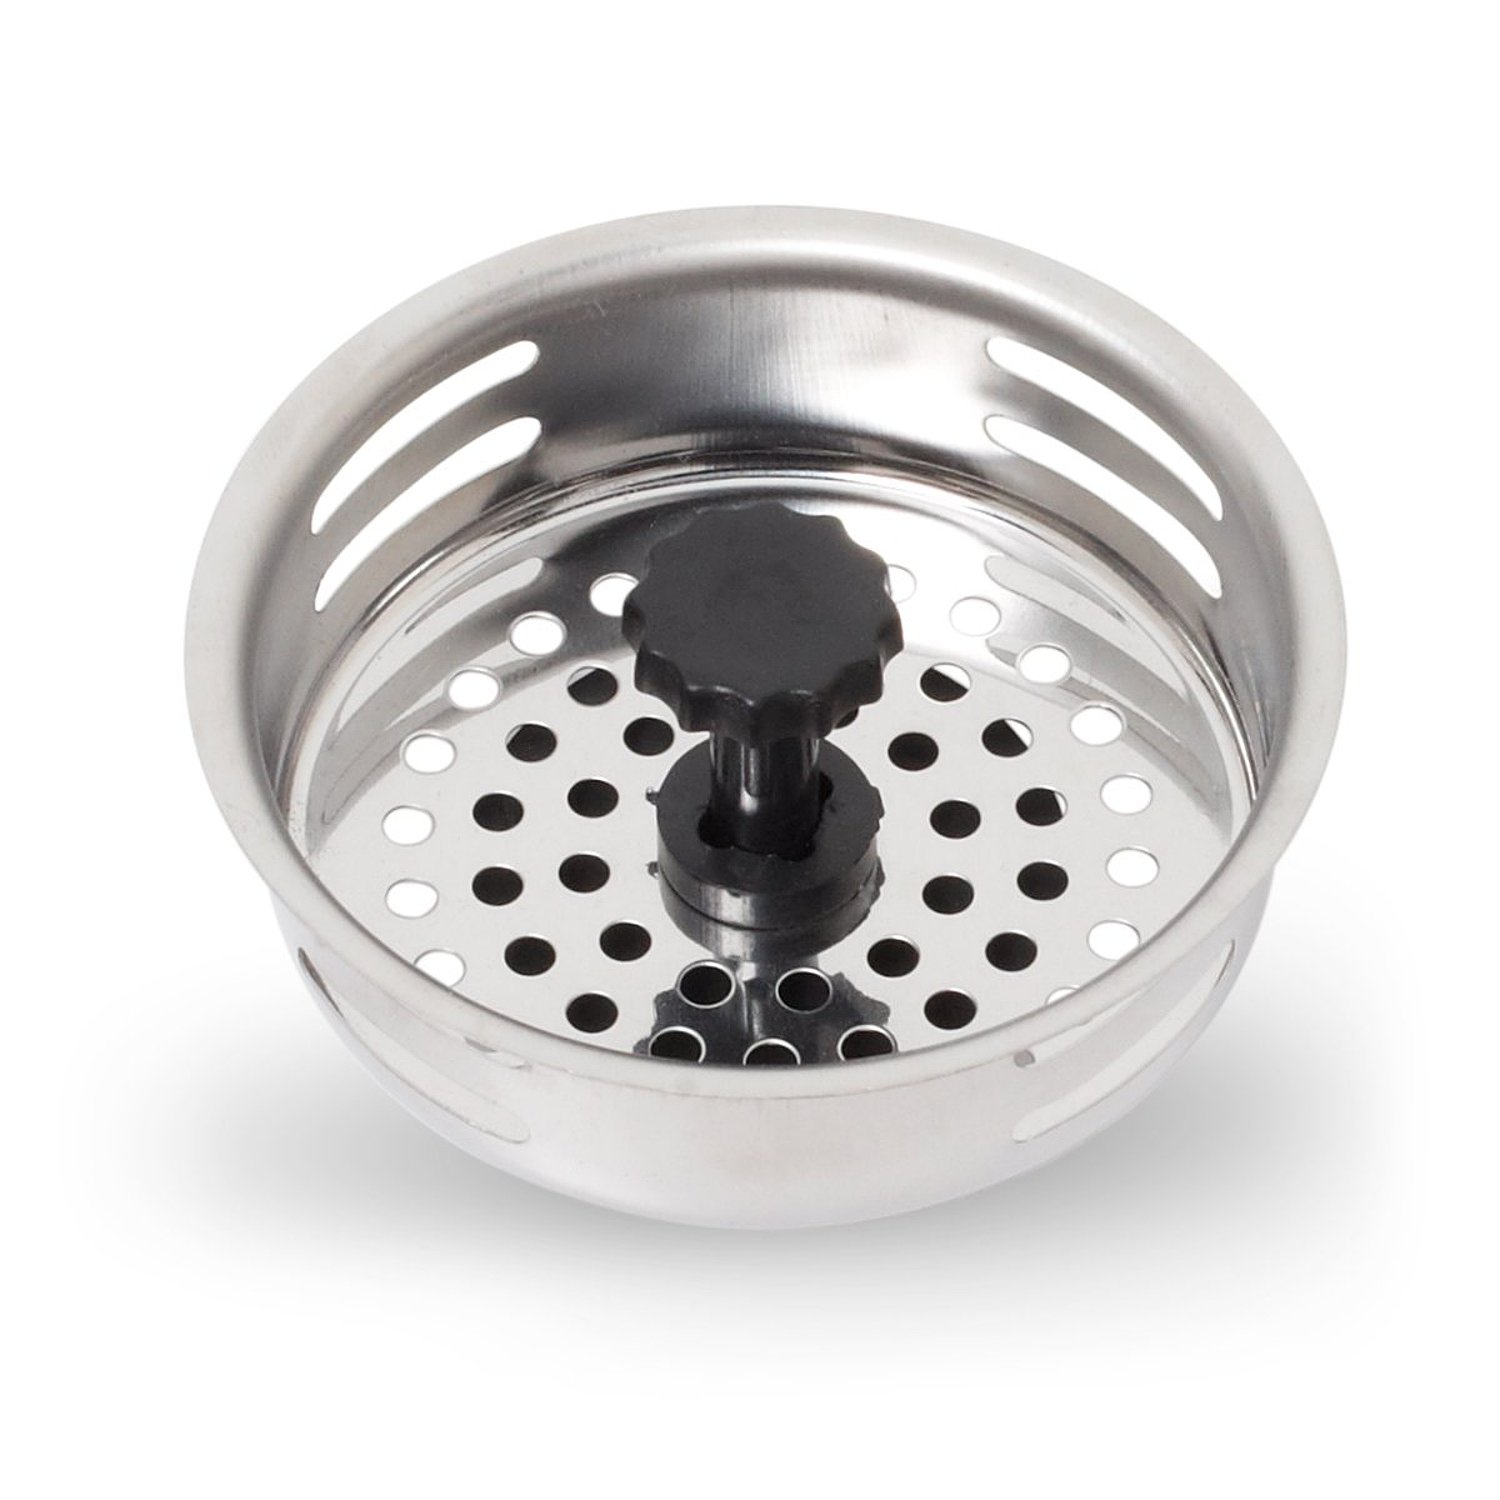 Фильтр для раковины Sink Strainer Basket